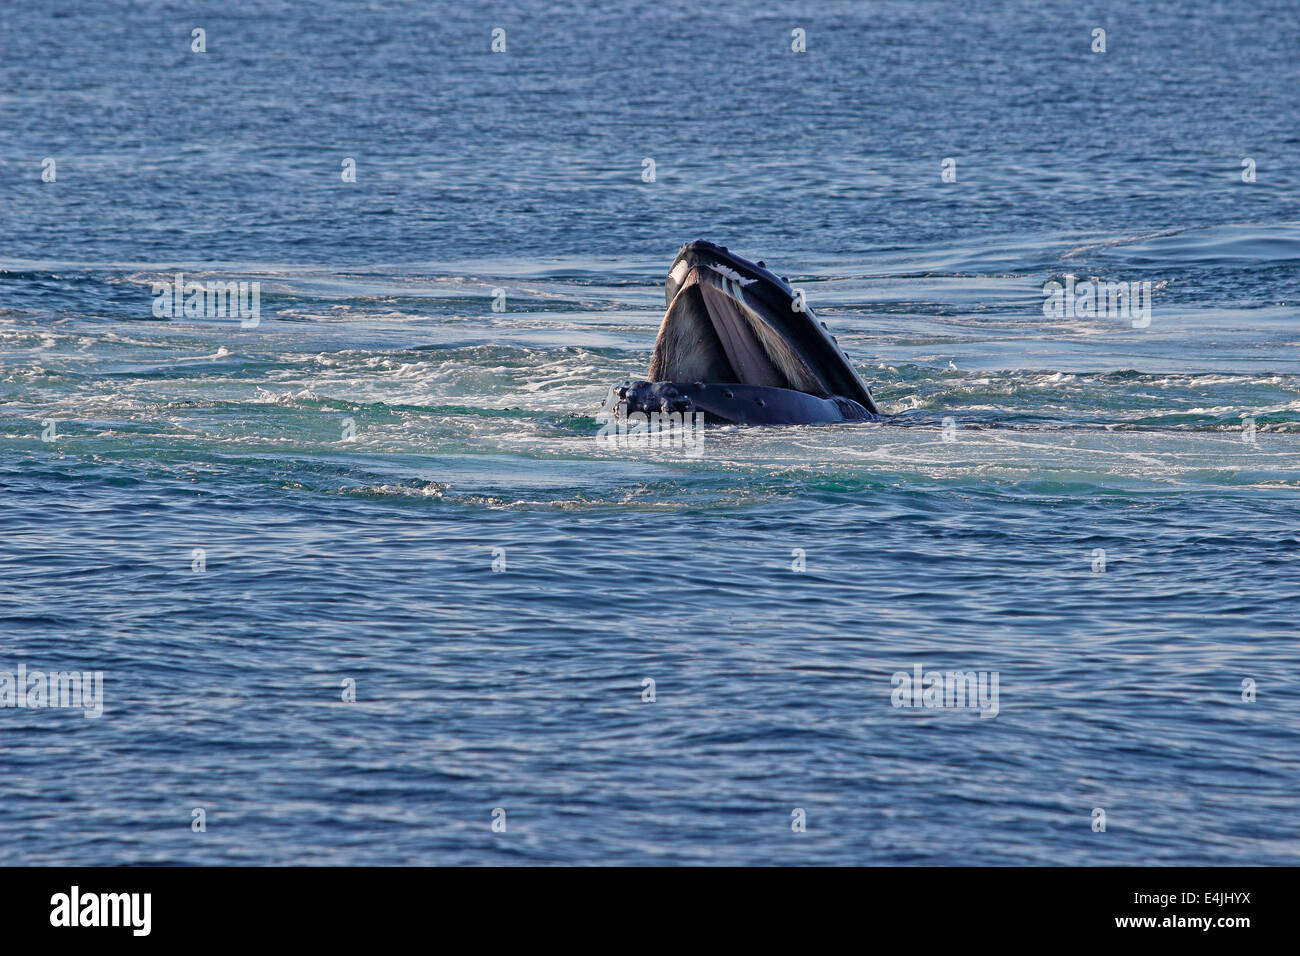 Les baleines à bosse (Megaptera novaeangliae) rupture d'alimentation Banque D'Images